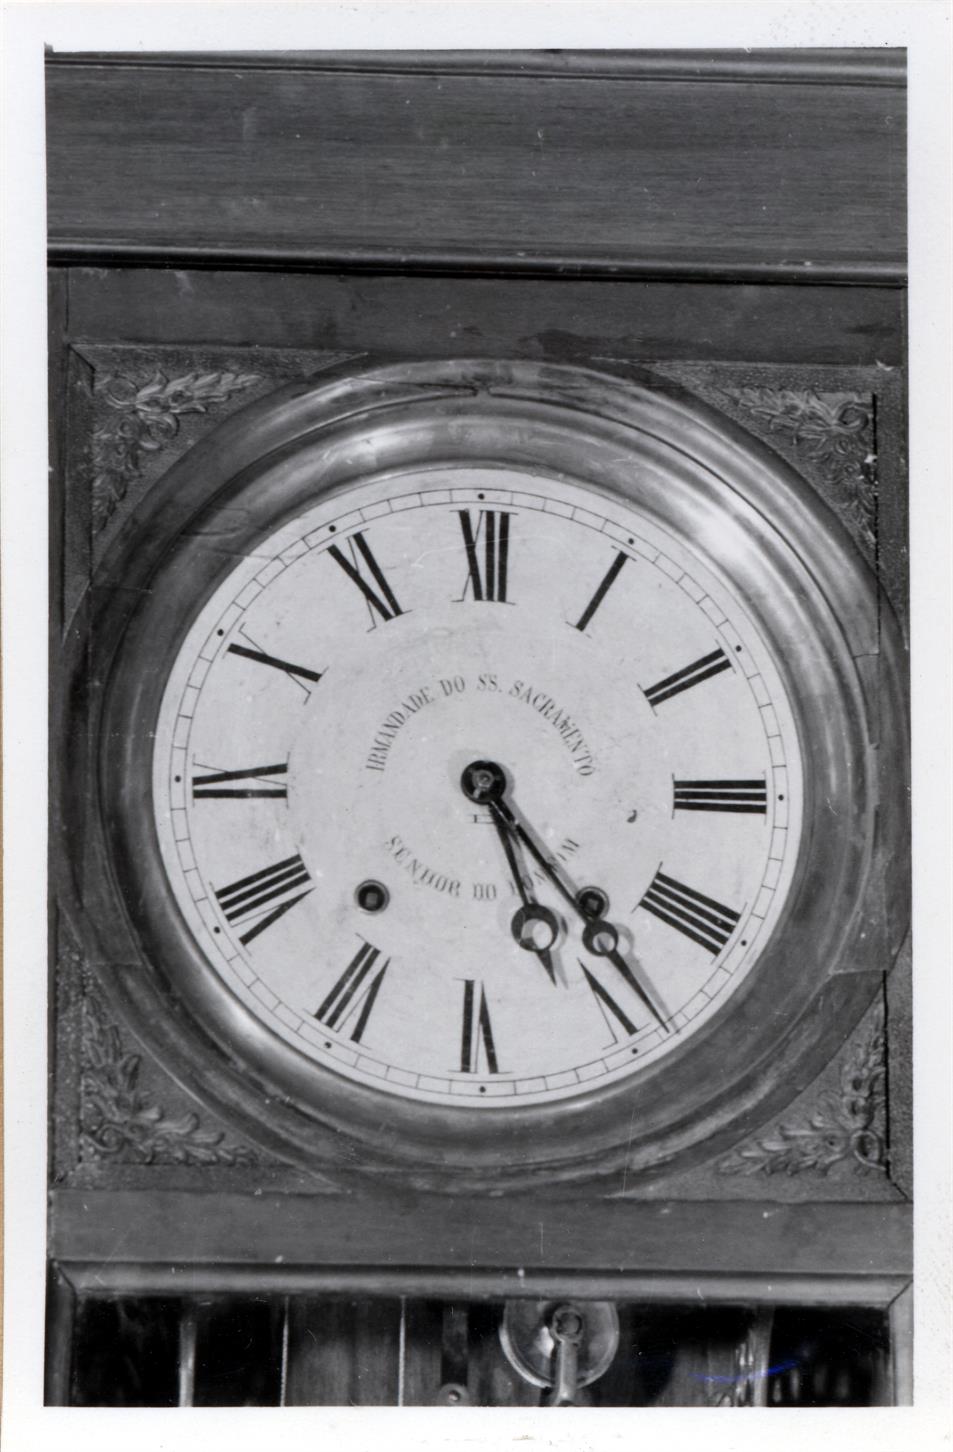 Exposição de relógios do século XVI ao XIX : relógios de caixa alta : pormenor